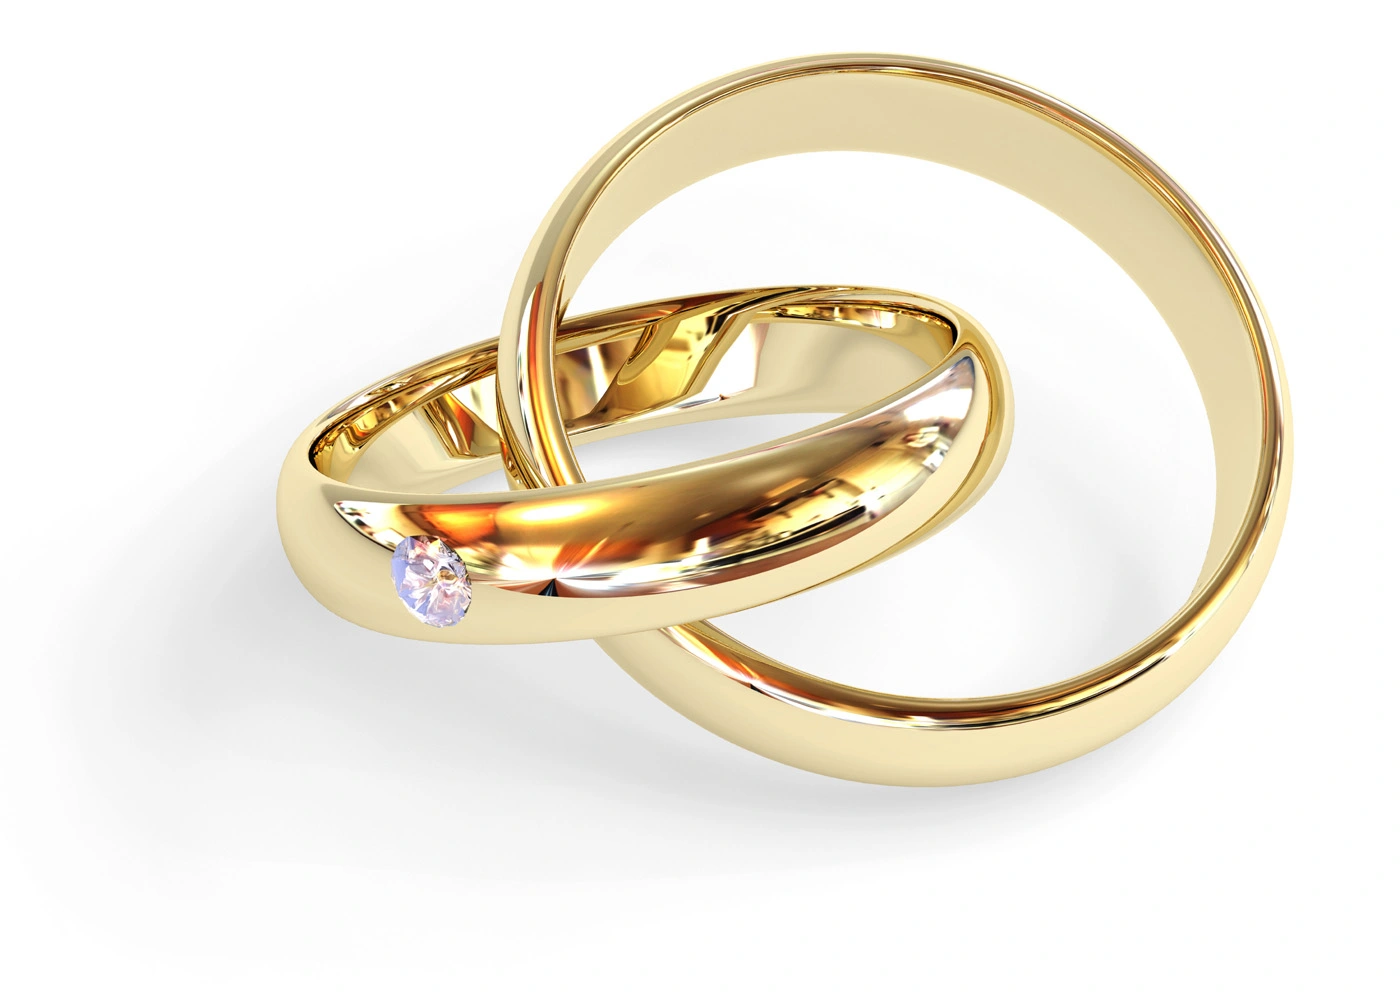 Hiện nay ngoài màu vàng truyền thống, nhẫn cưới có thể làm từ nhiều chất liệu khác với màu sắc khác.